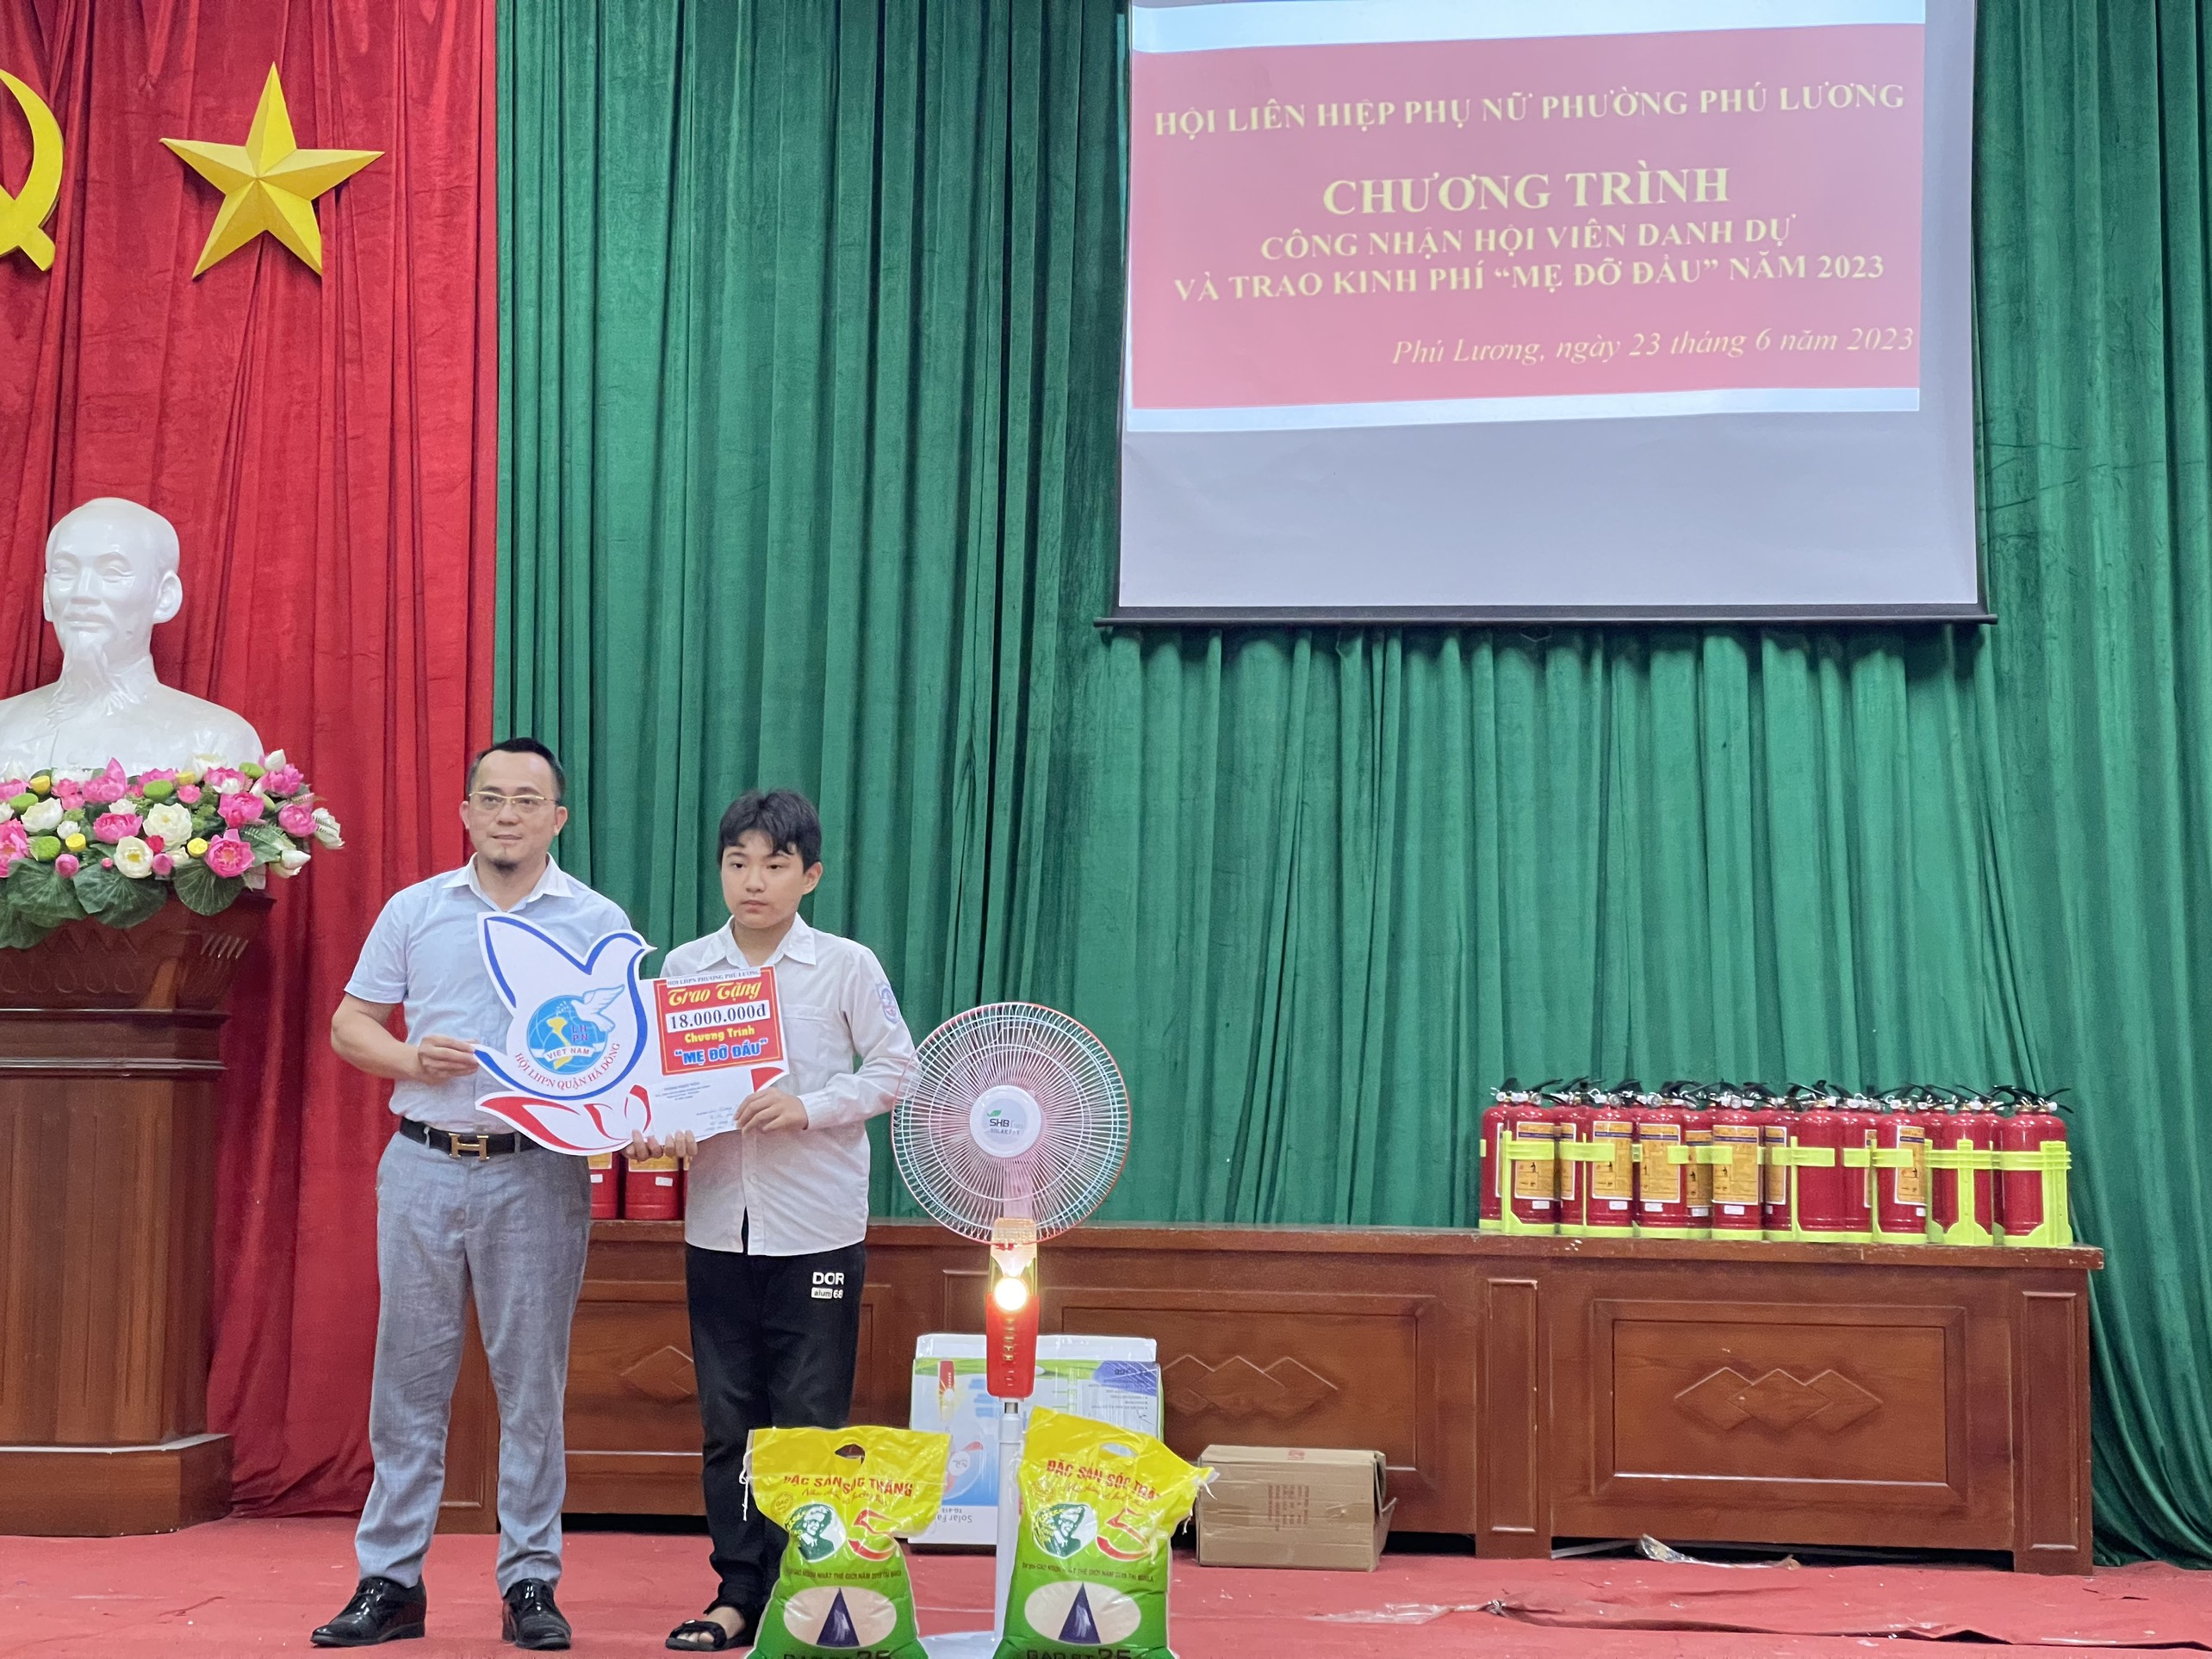 Phường Phú Lương - Hà Nội với mô hình phong trào phòng cháy, chữa cháy và cứu nạn cứu hộ toàn dân